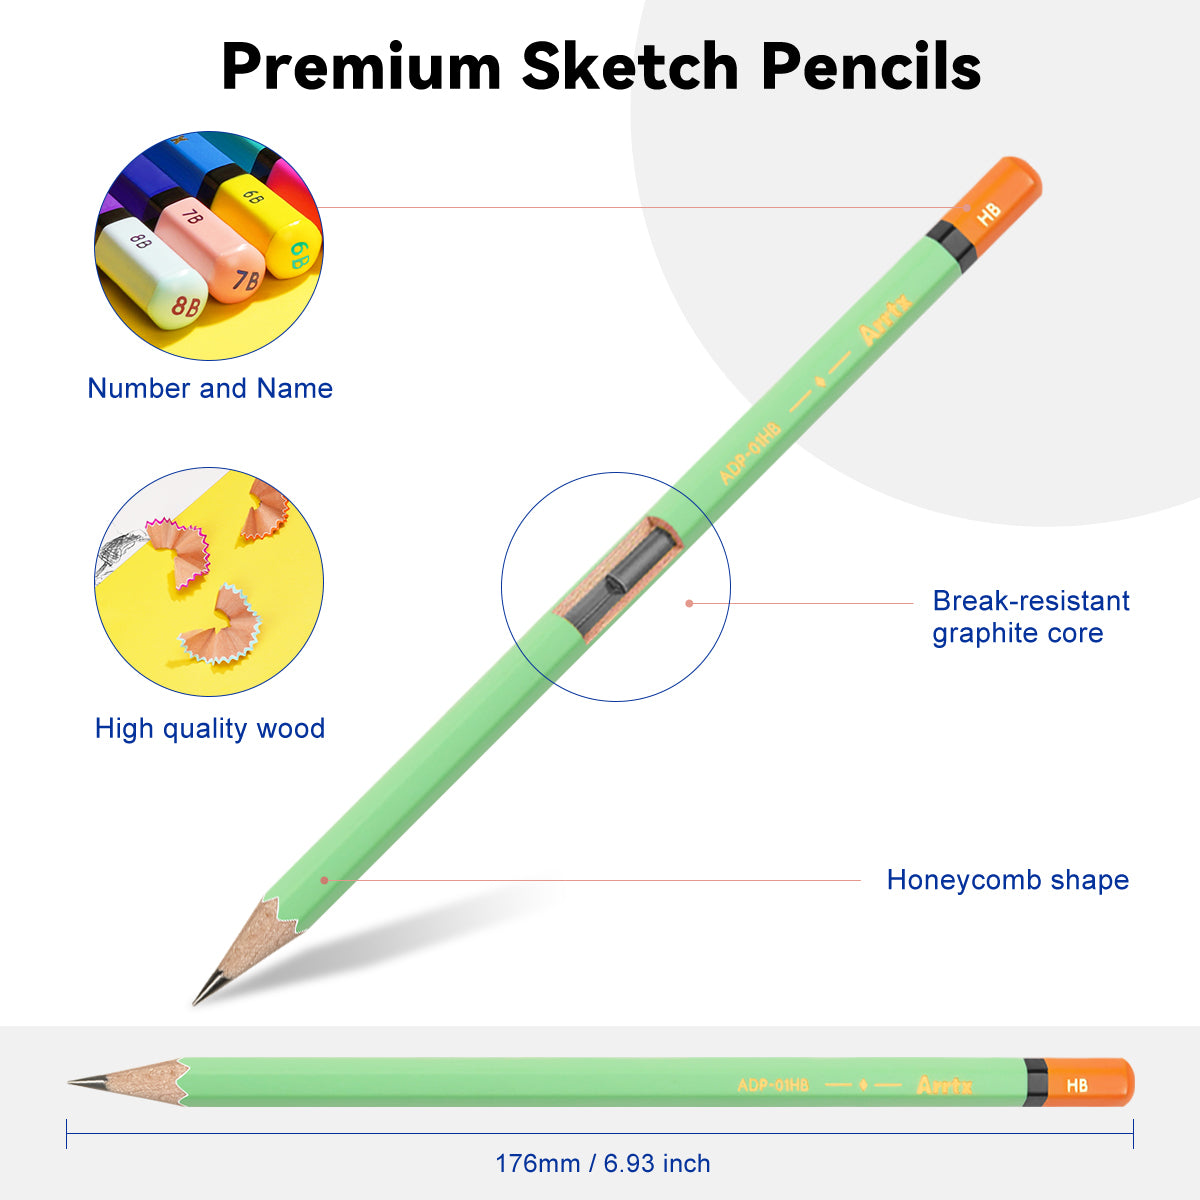 Crayons à croquis Arrtx, paquet de 14 crayons à dessin artistique #2 HB